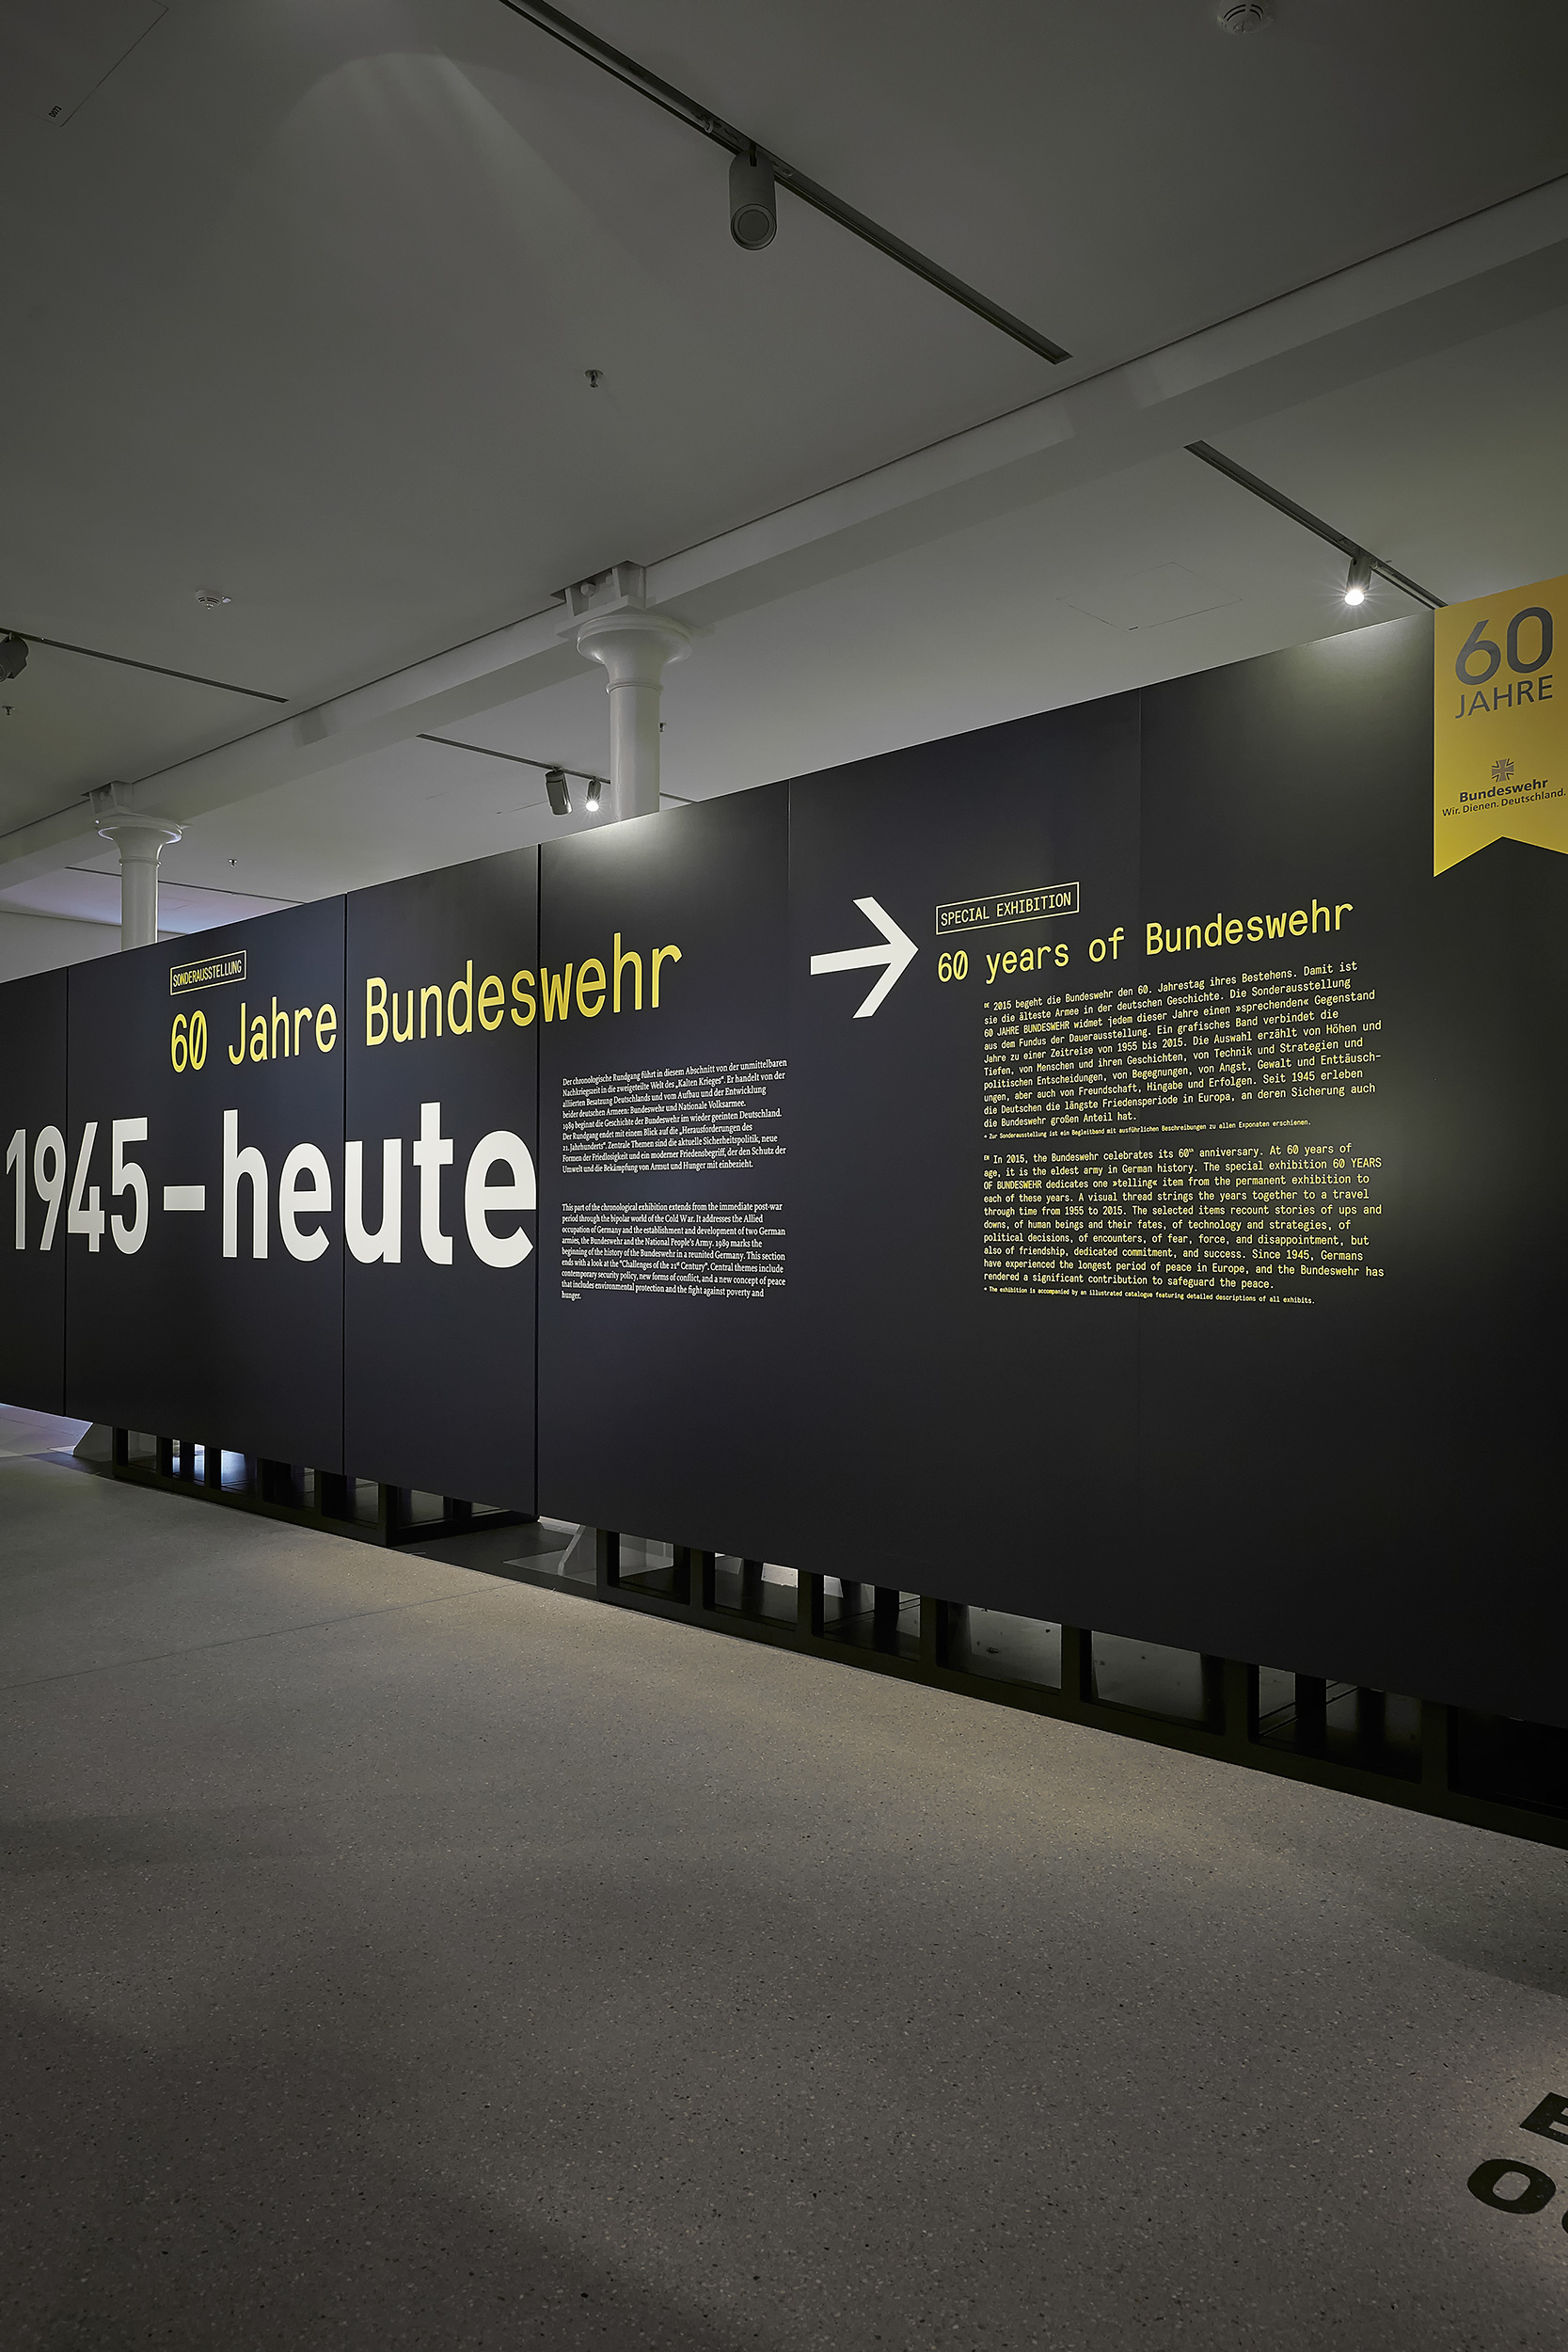 Mäder Haslbeck exhibition / 60 Jahre Bundeswehr